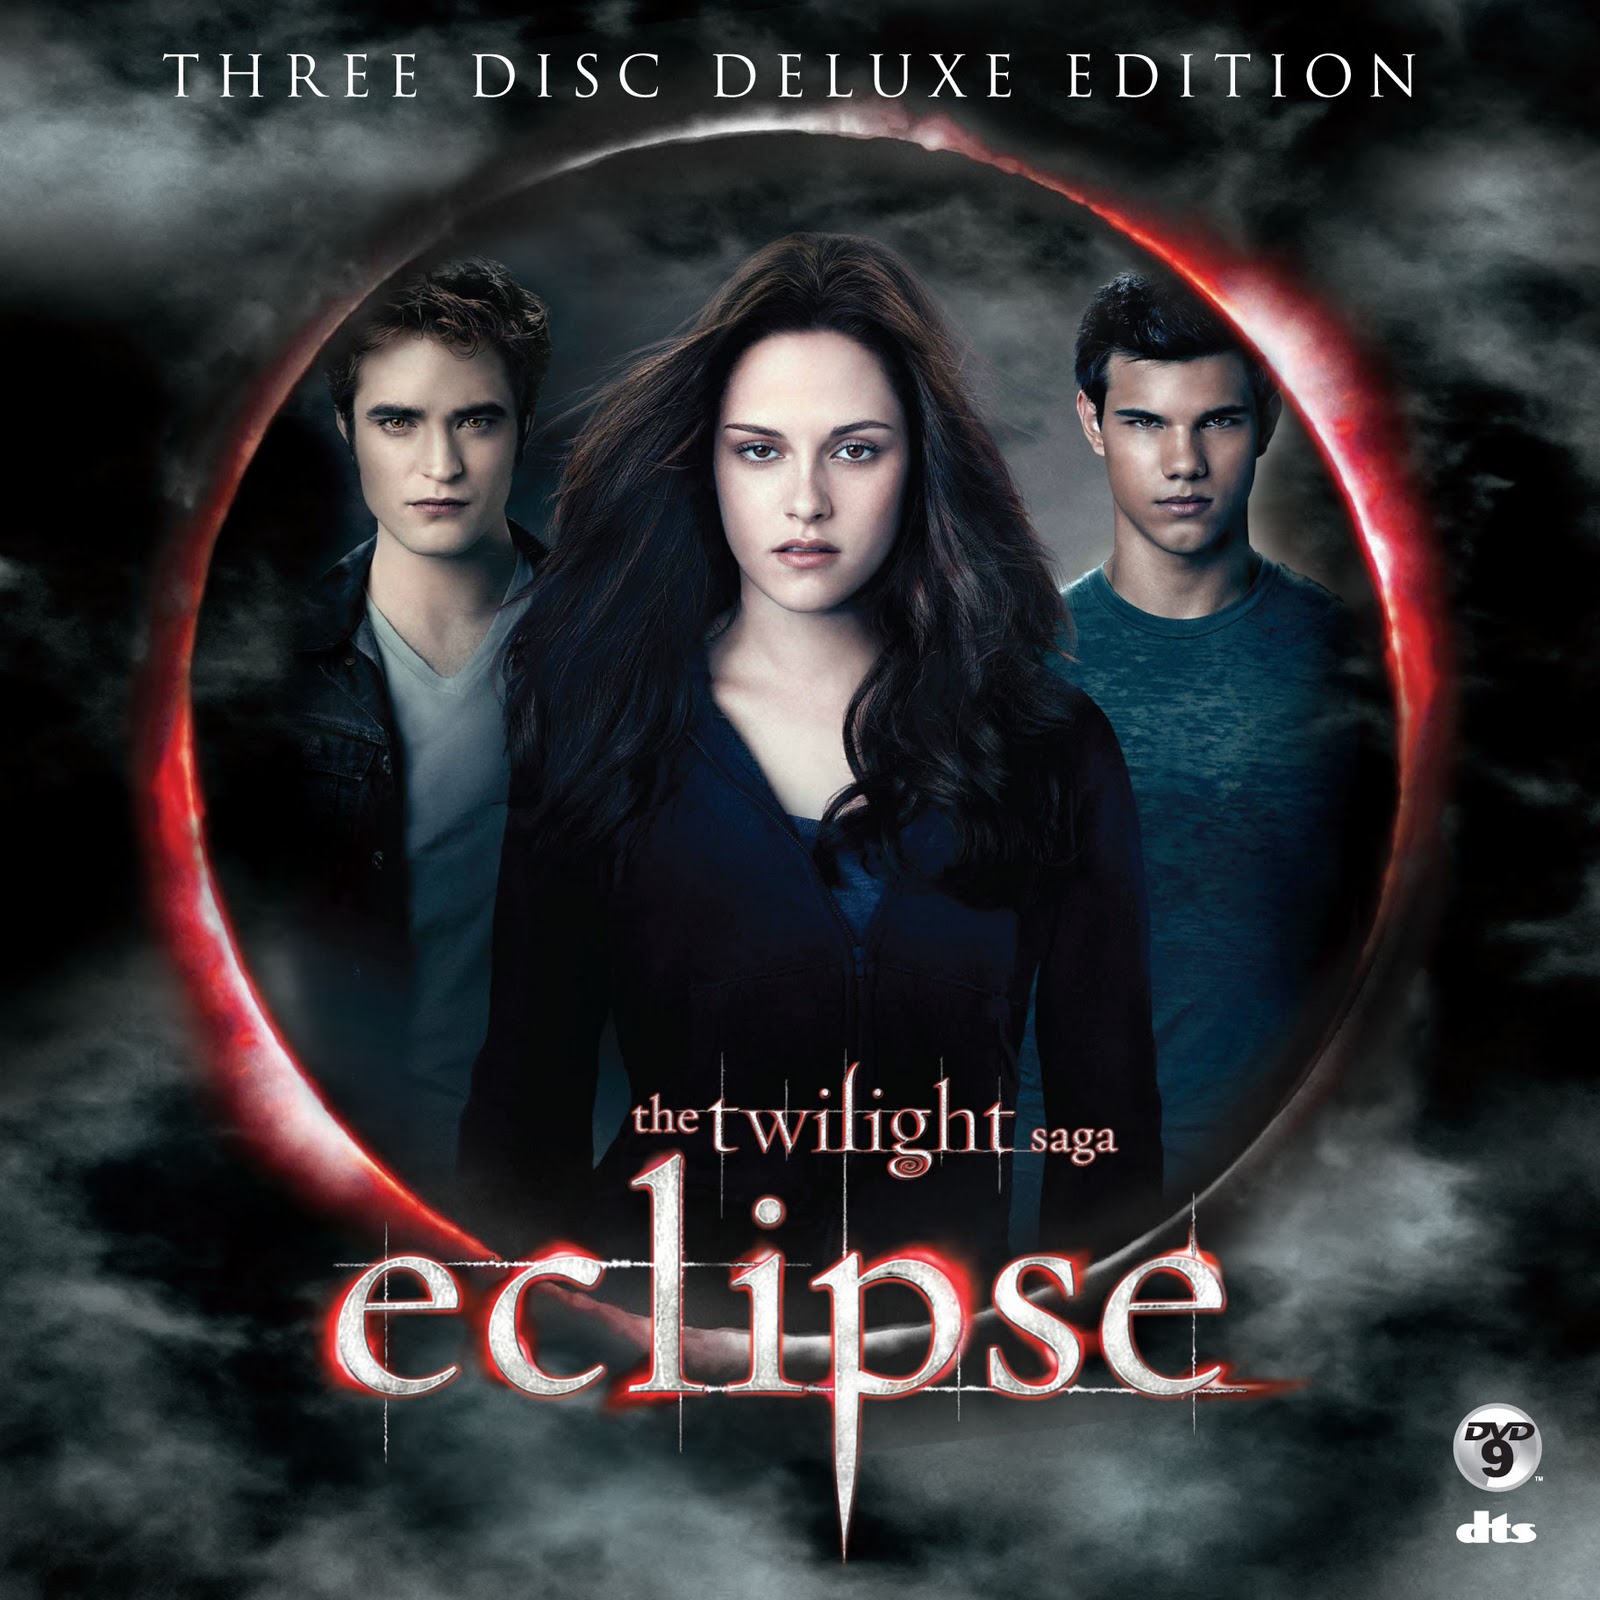 Dvd Eclipse